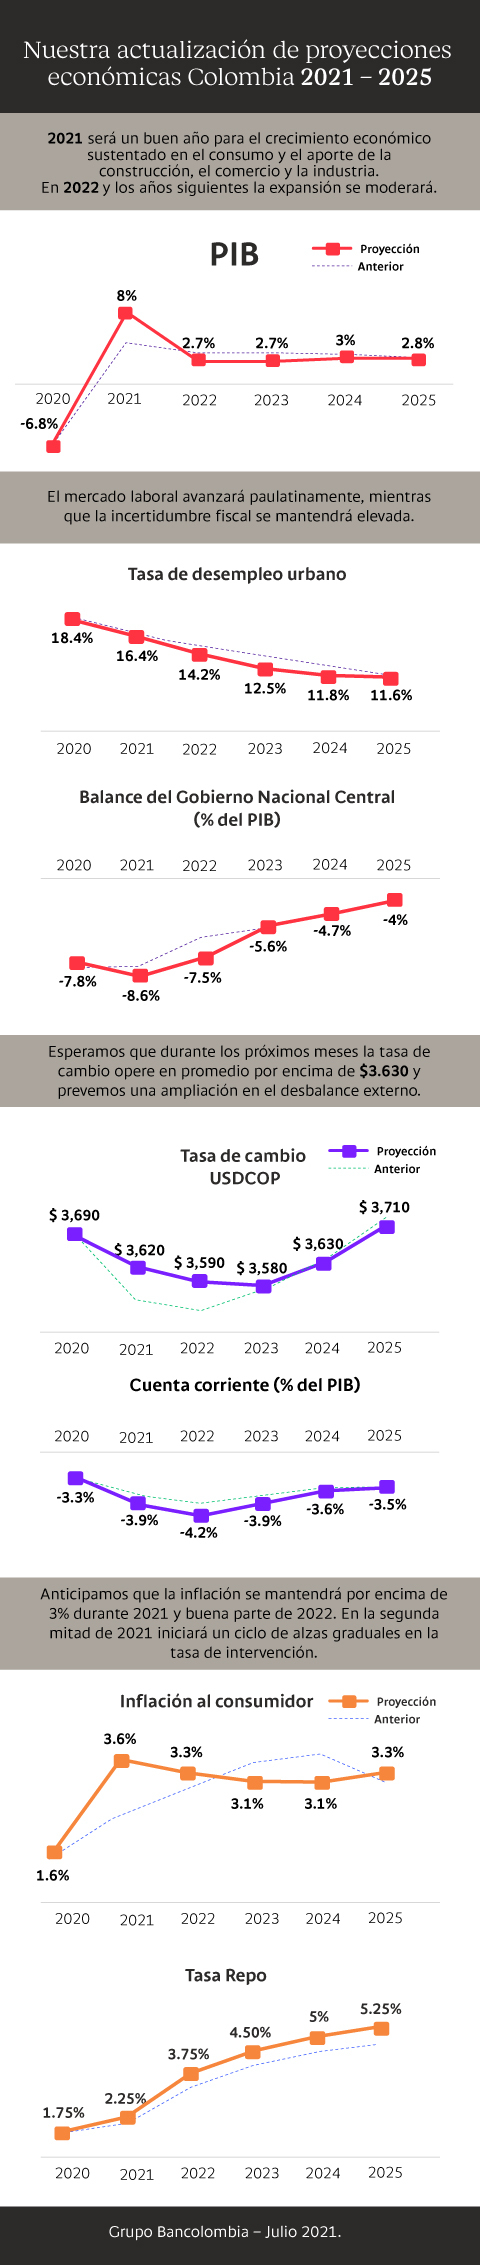 Infografía con la actualización de proyecciones Colombia 2021-2055 de Bancolombia: PIB, inflación, tasa de cambio, tasa de desempleo, balance GNC, cuenta corriente, tasa repo